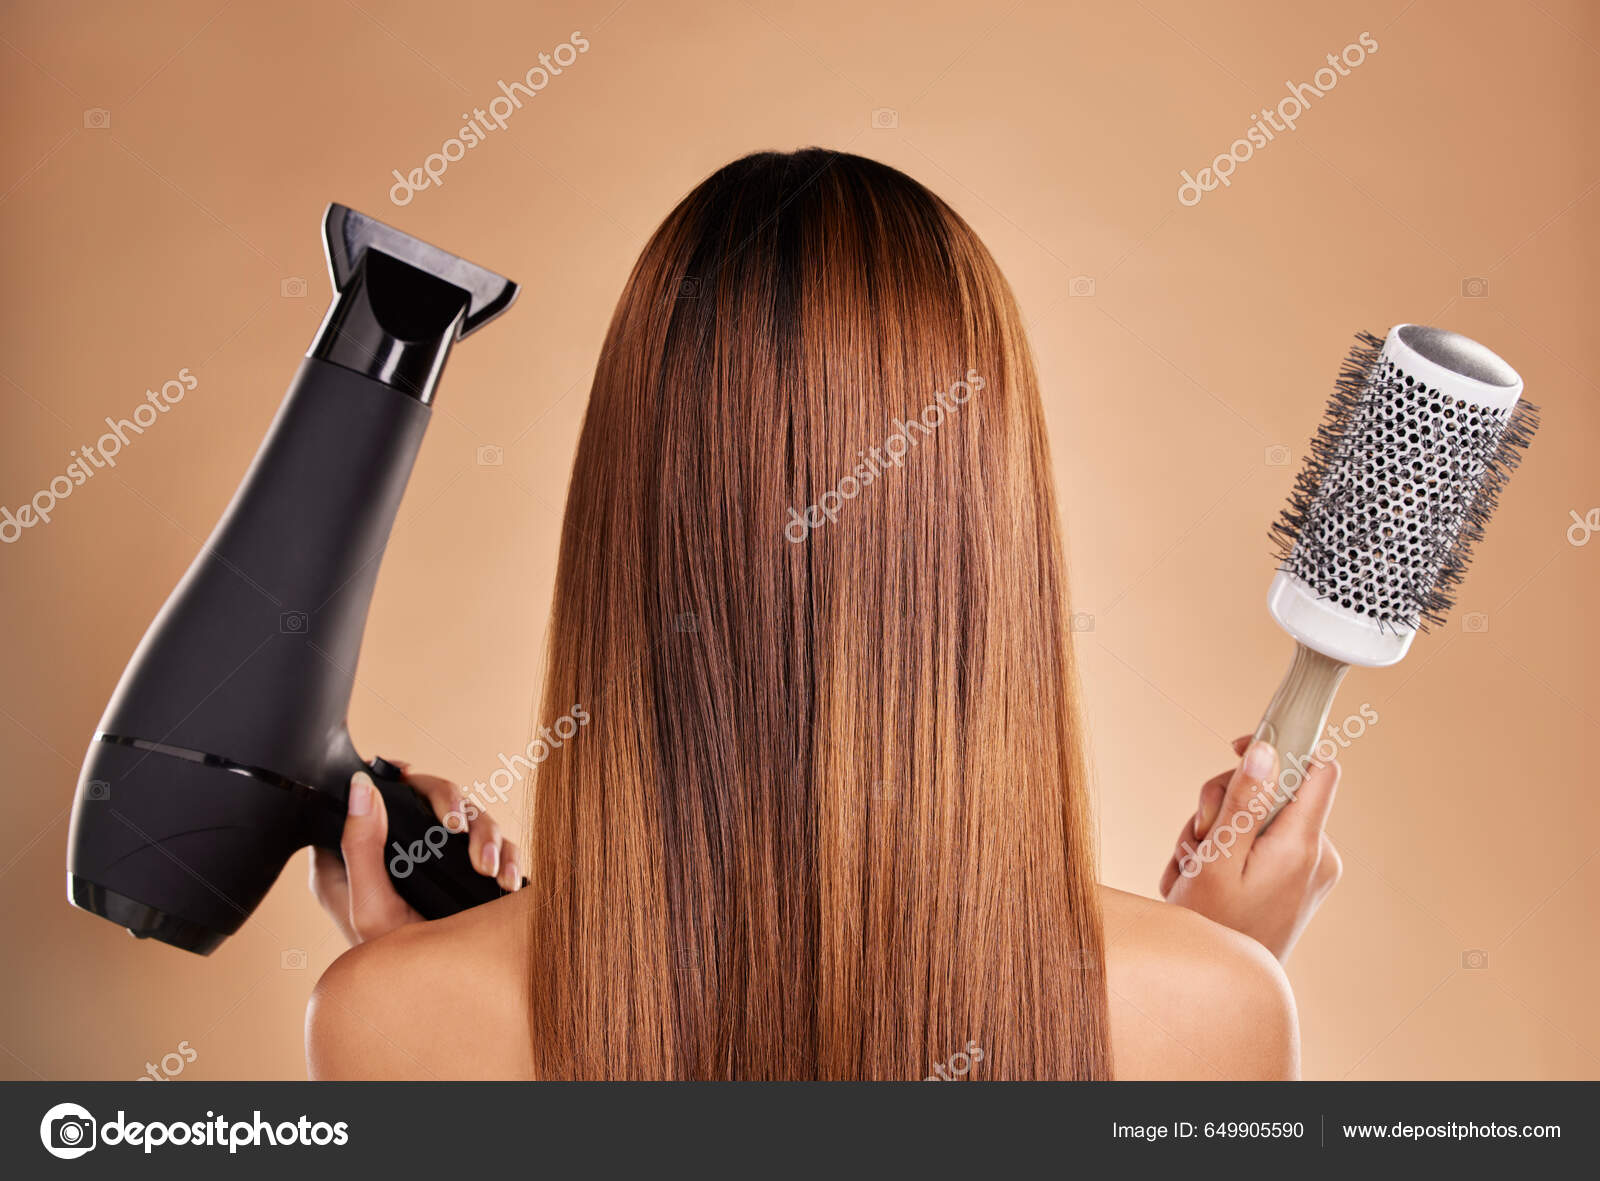 Mão segurando o secador de cabelo na cor preta isolado em um fundo